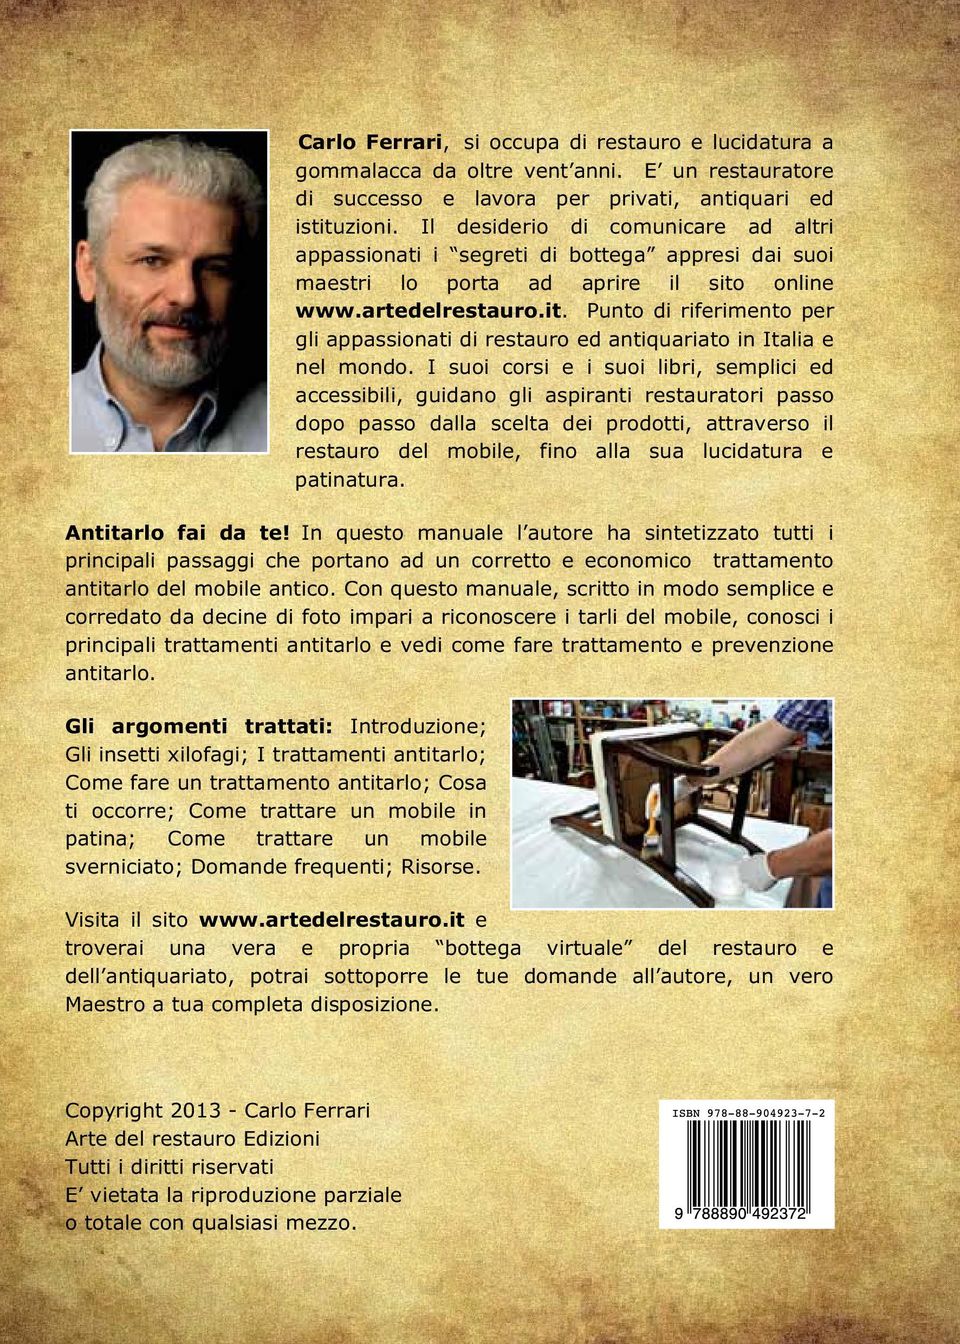 online www.artedelrestauro.it. Punto di riferimento per gli appassionati di restauro ed antiquariato in Italia e nel mondo.